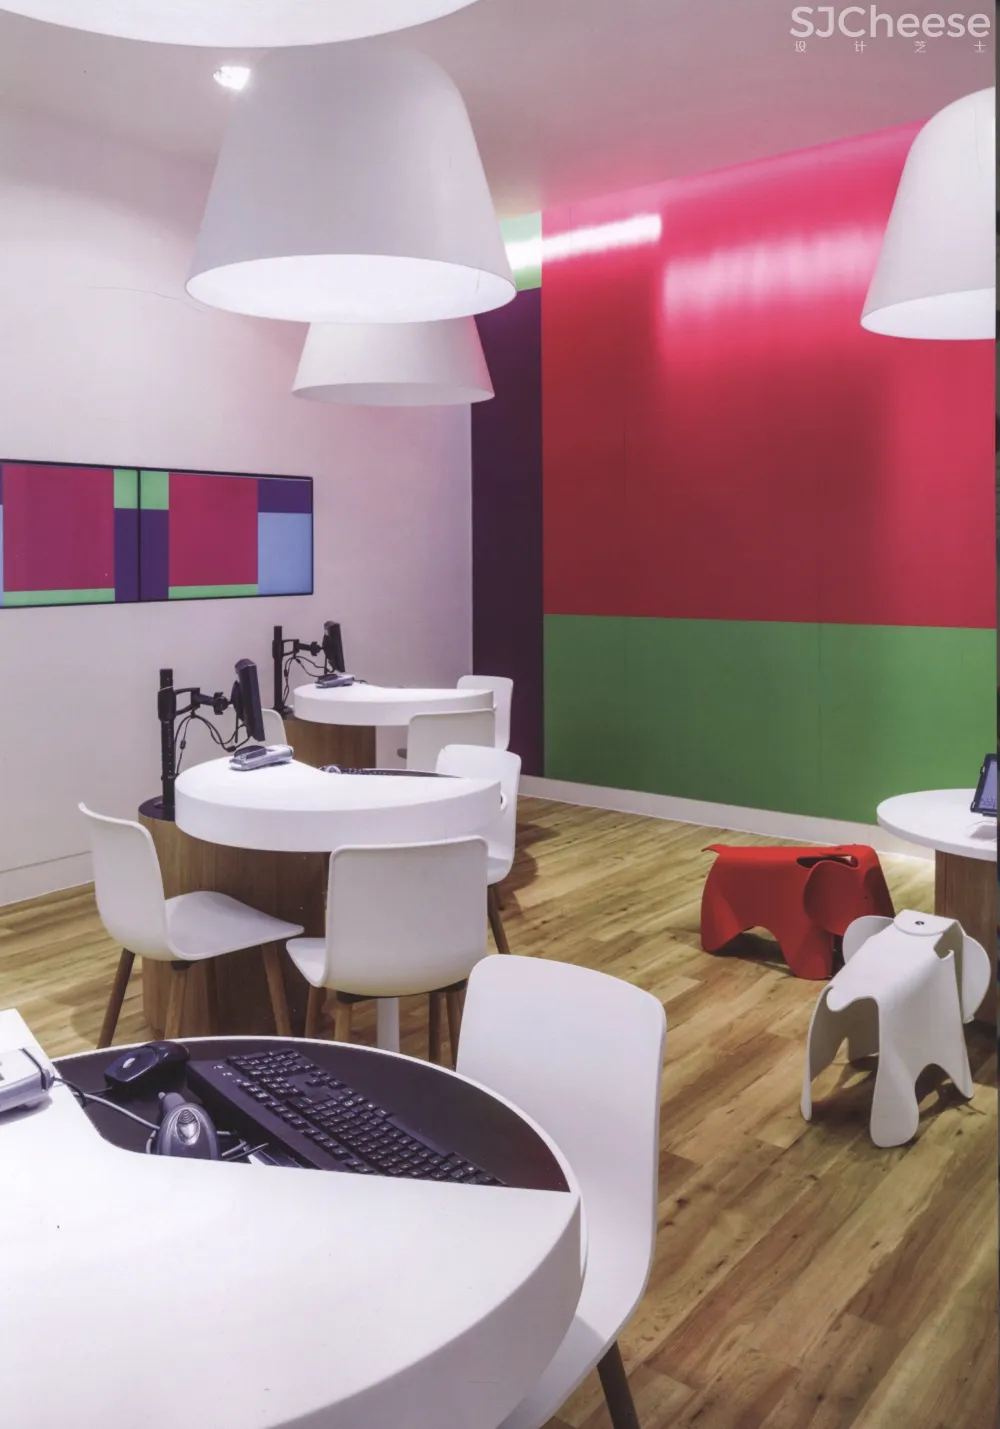 咖啡店商店创意商业空间设计-2-时刻设计网